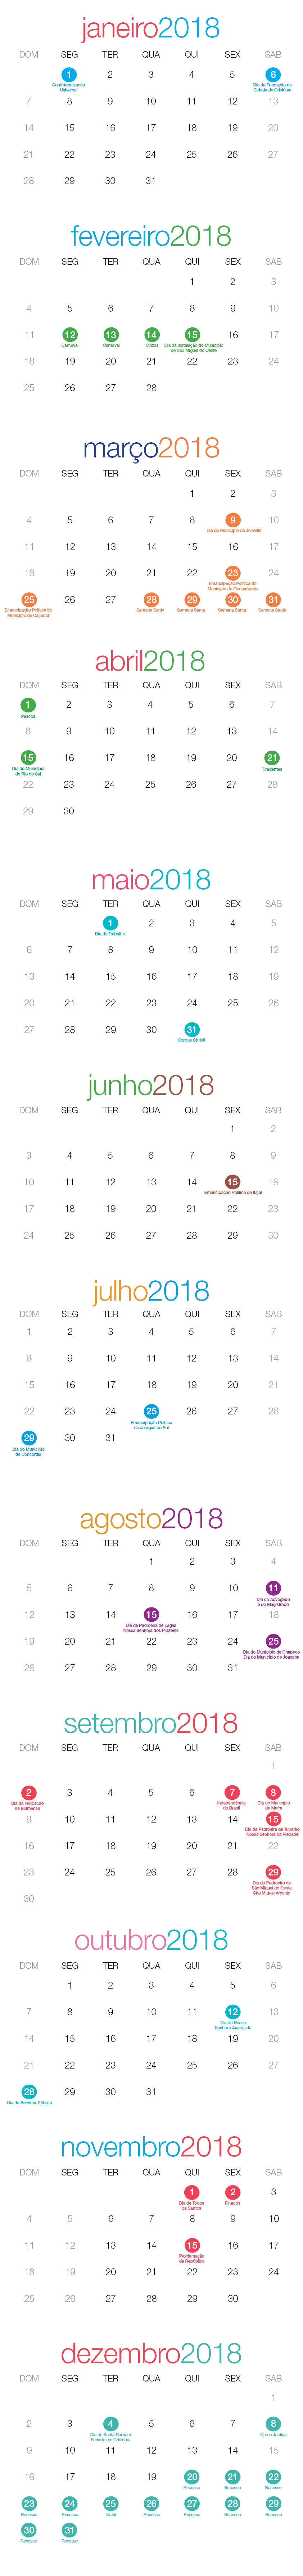 Calendário 2018